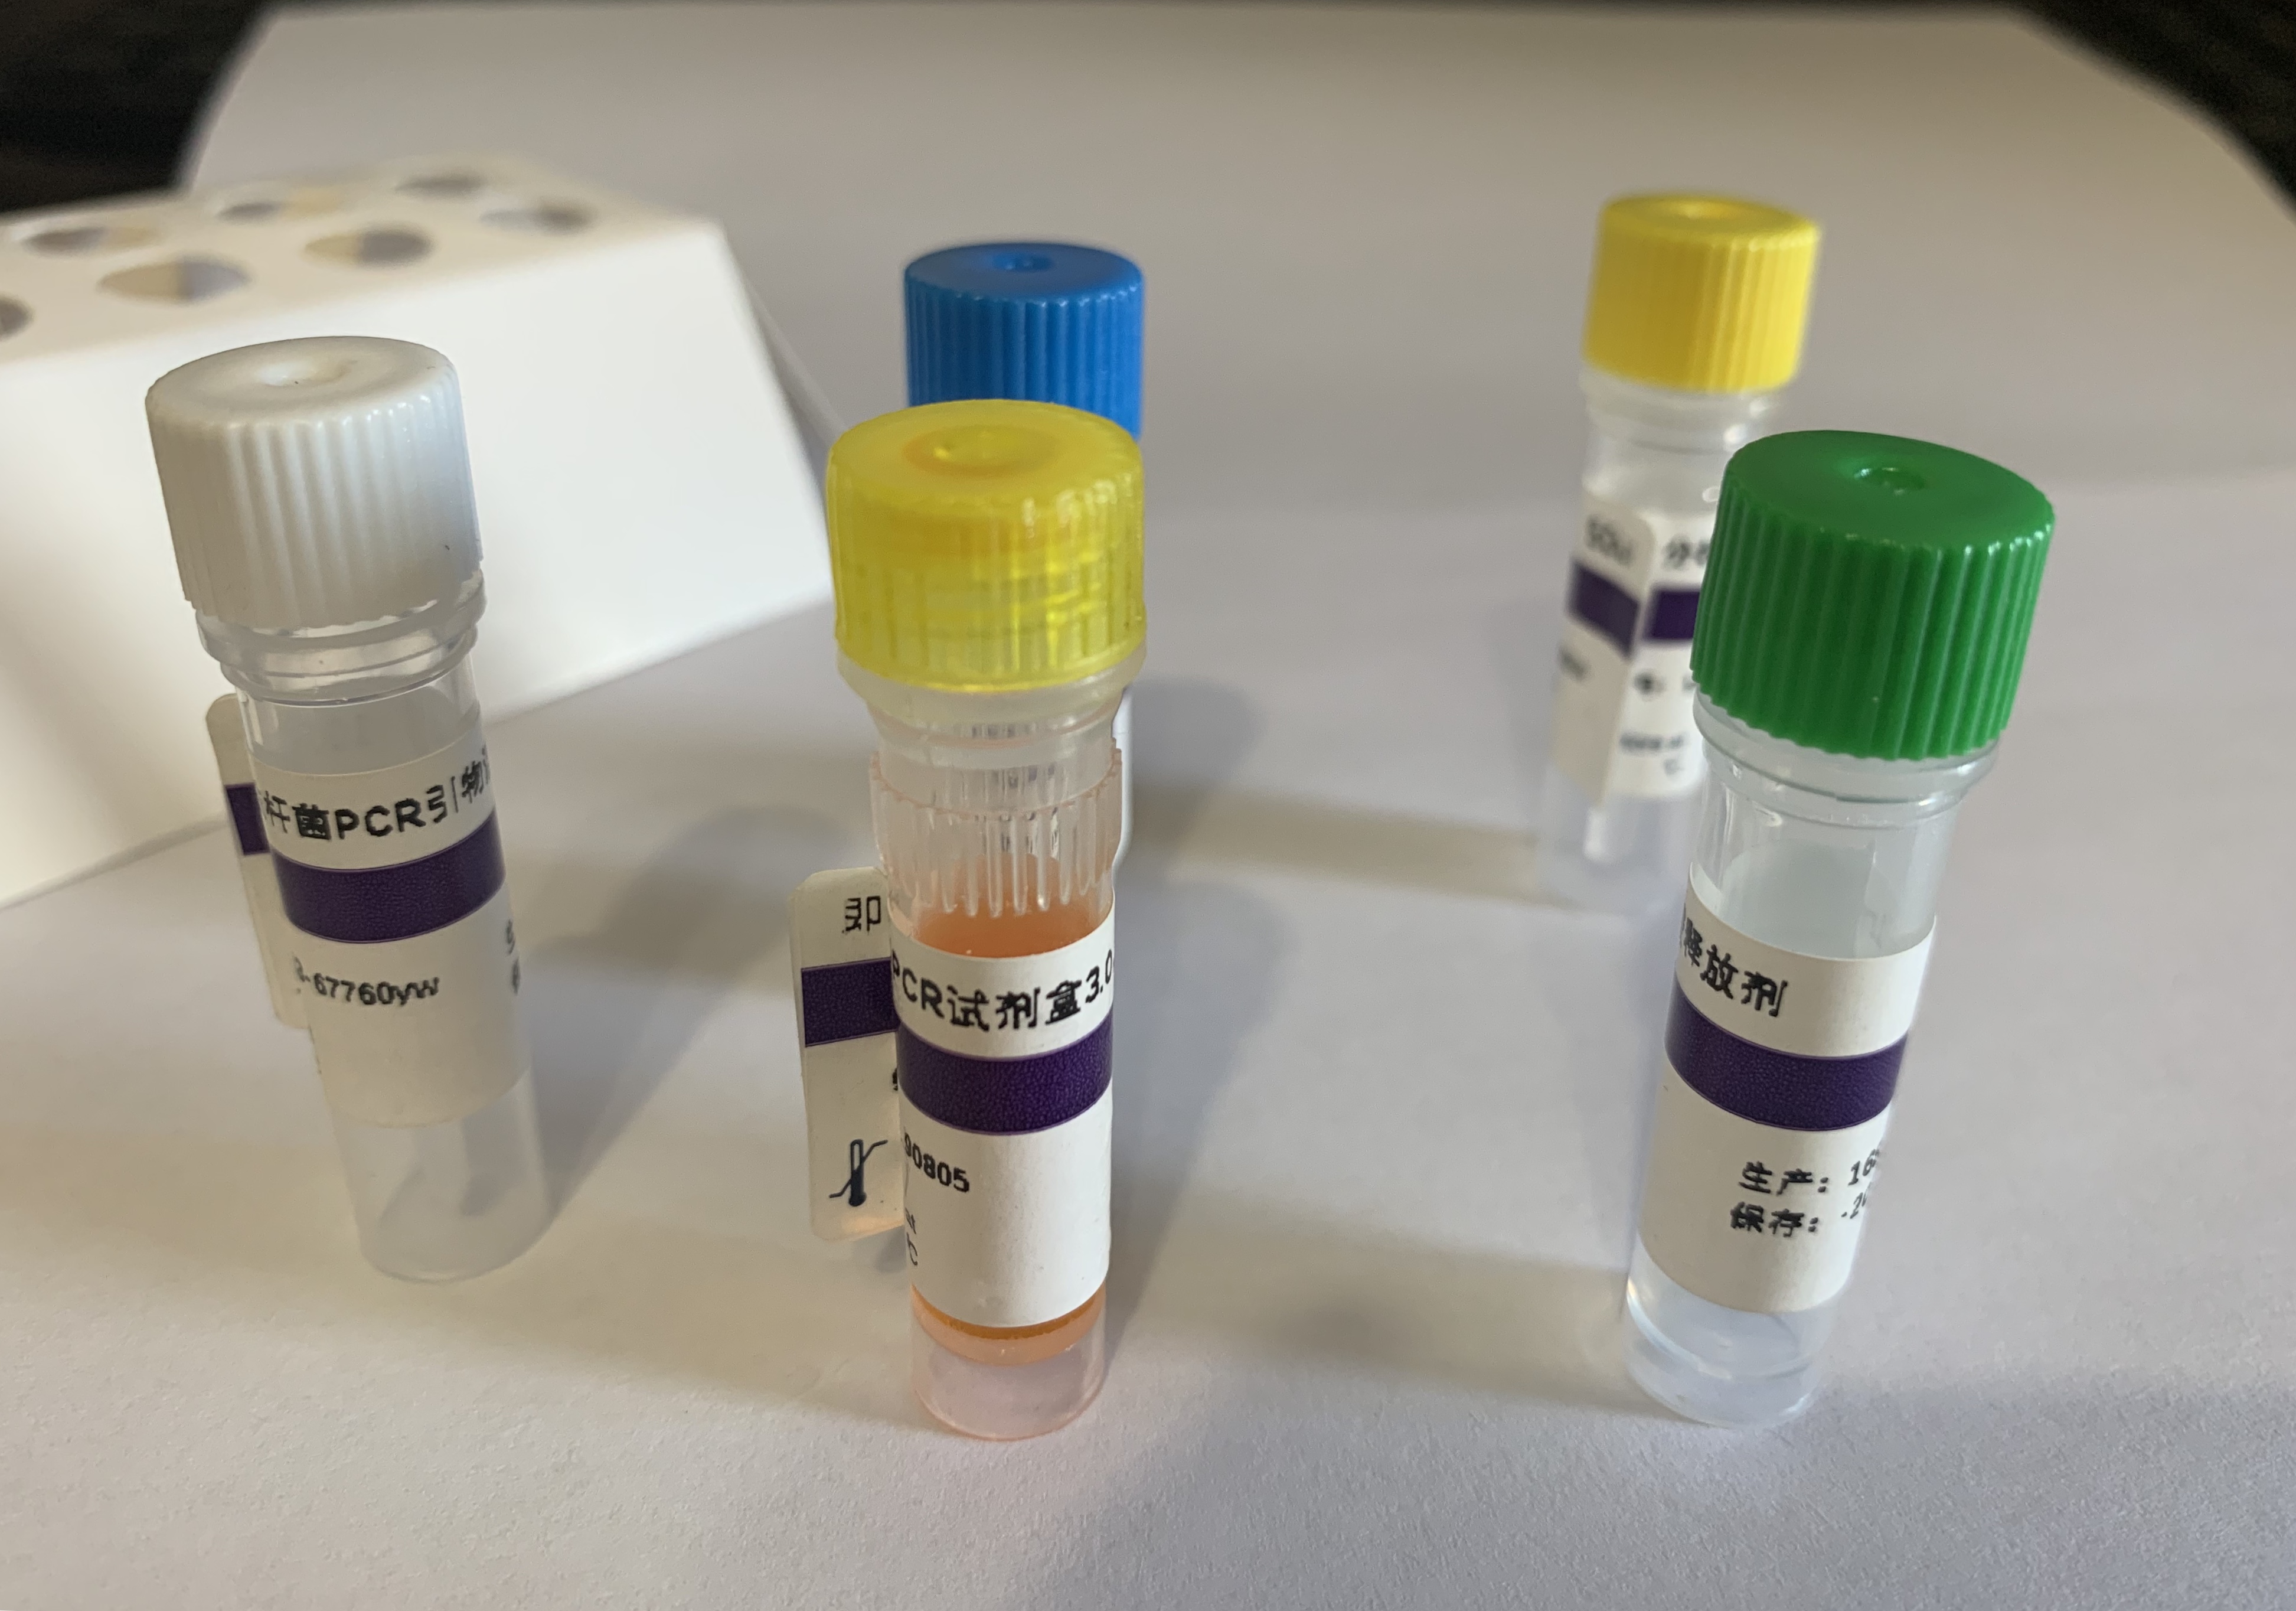 超广谱β-内酰胺酶大肠埃希菌探针法荧光定量PCR试剂盒